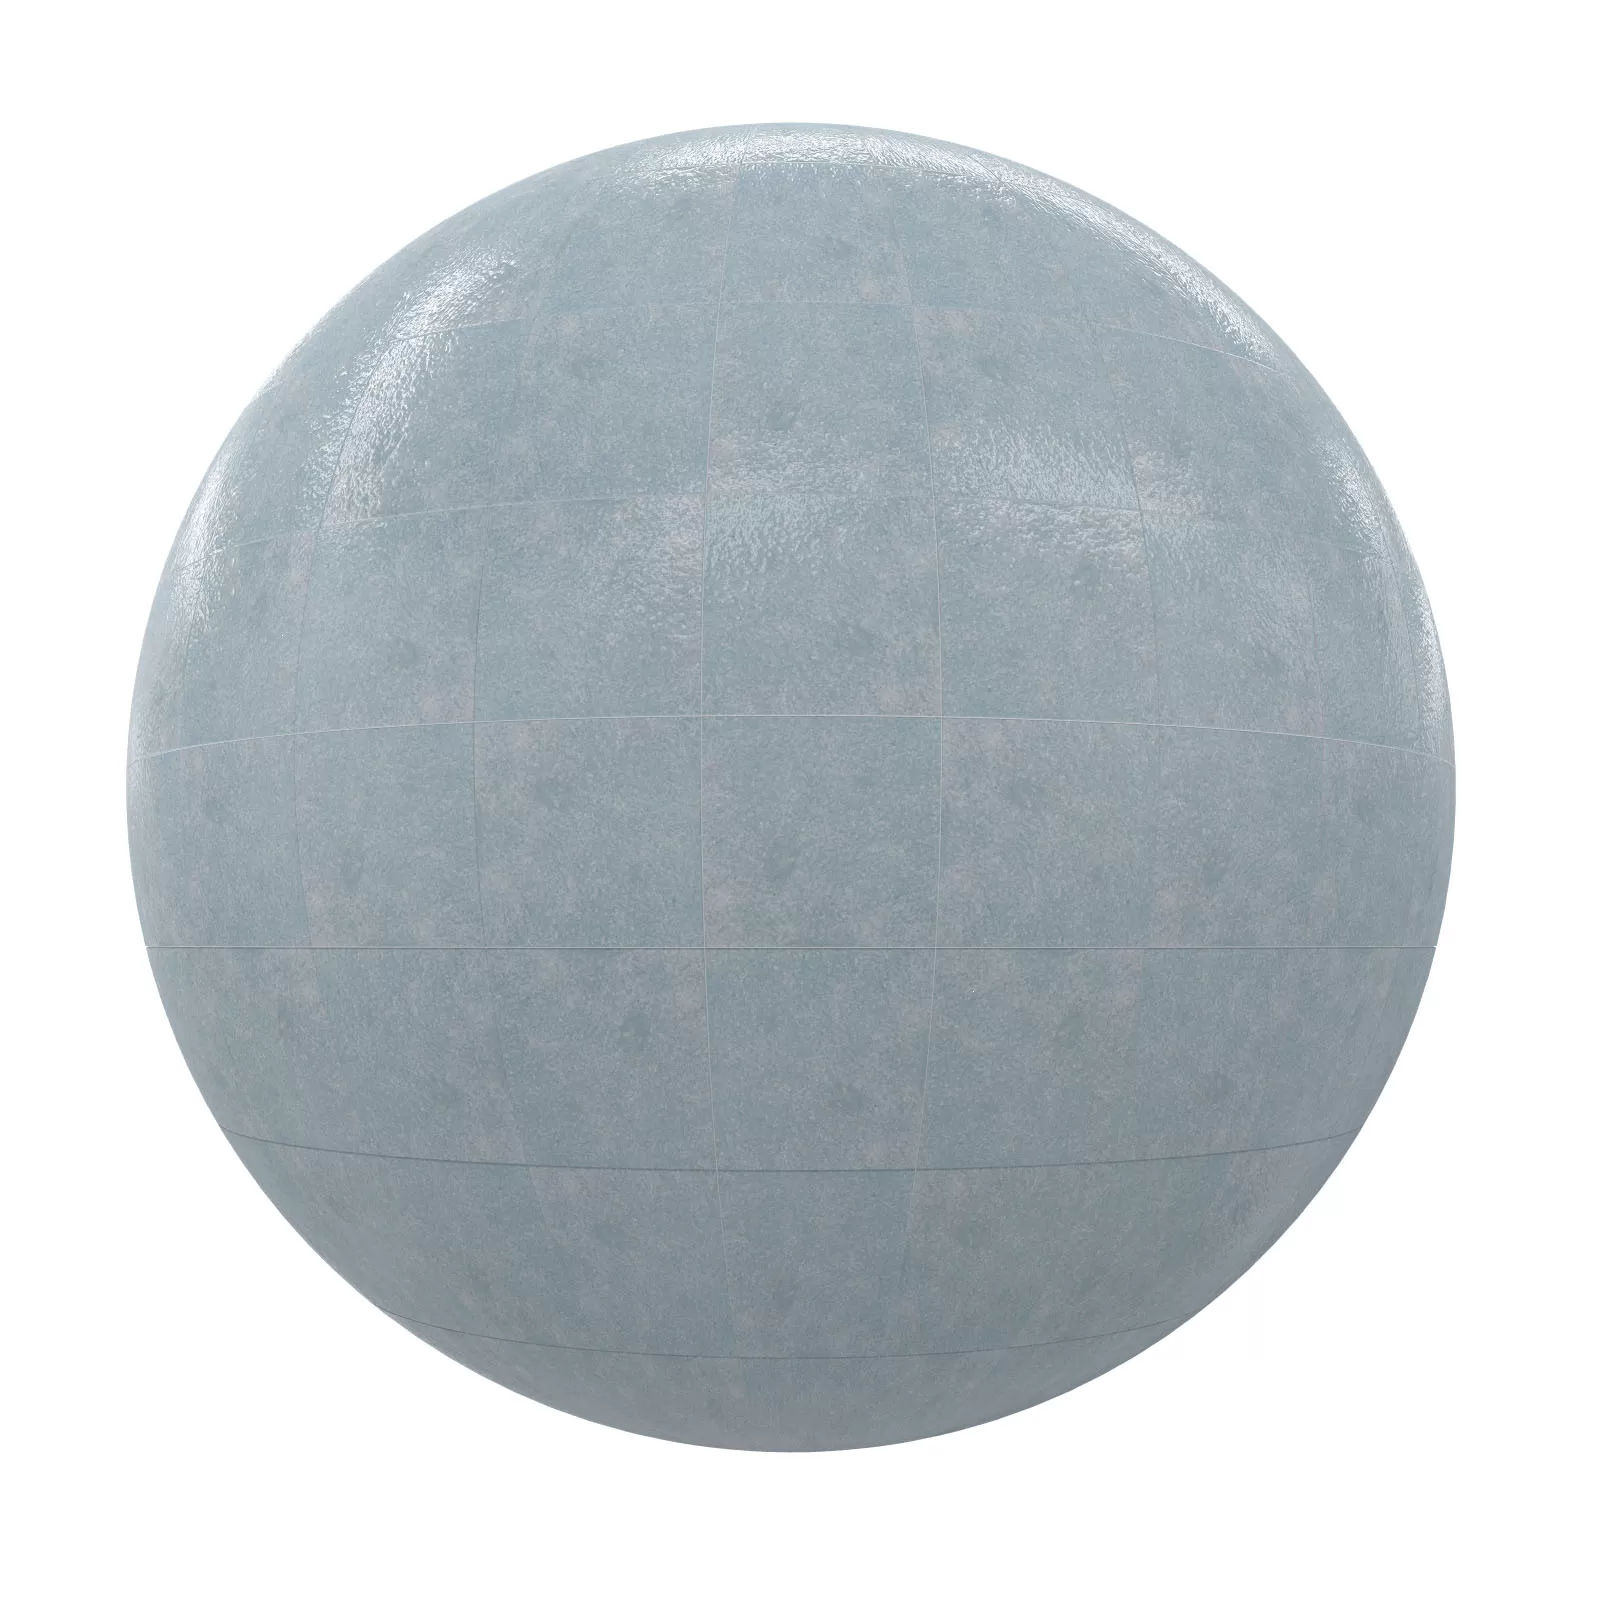 PBR CGAXIS TEXTURES – TILES – Grey Tiles 19